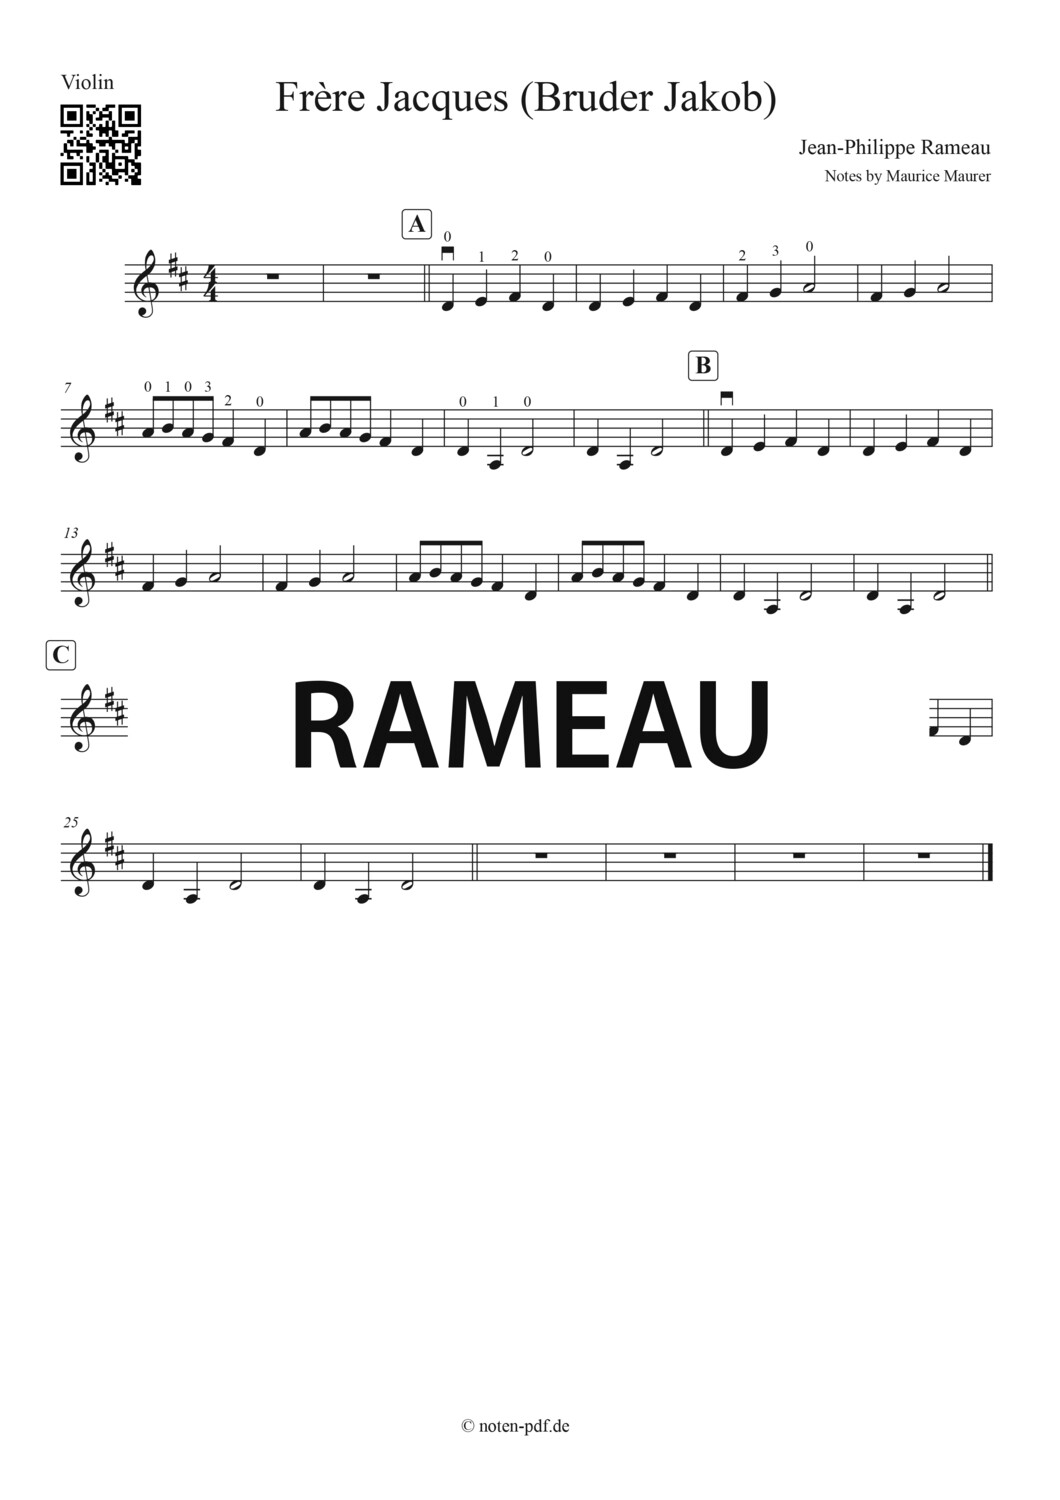 Rameau: Frère Jaques, Bruder Jakob